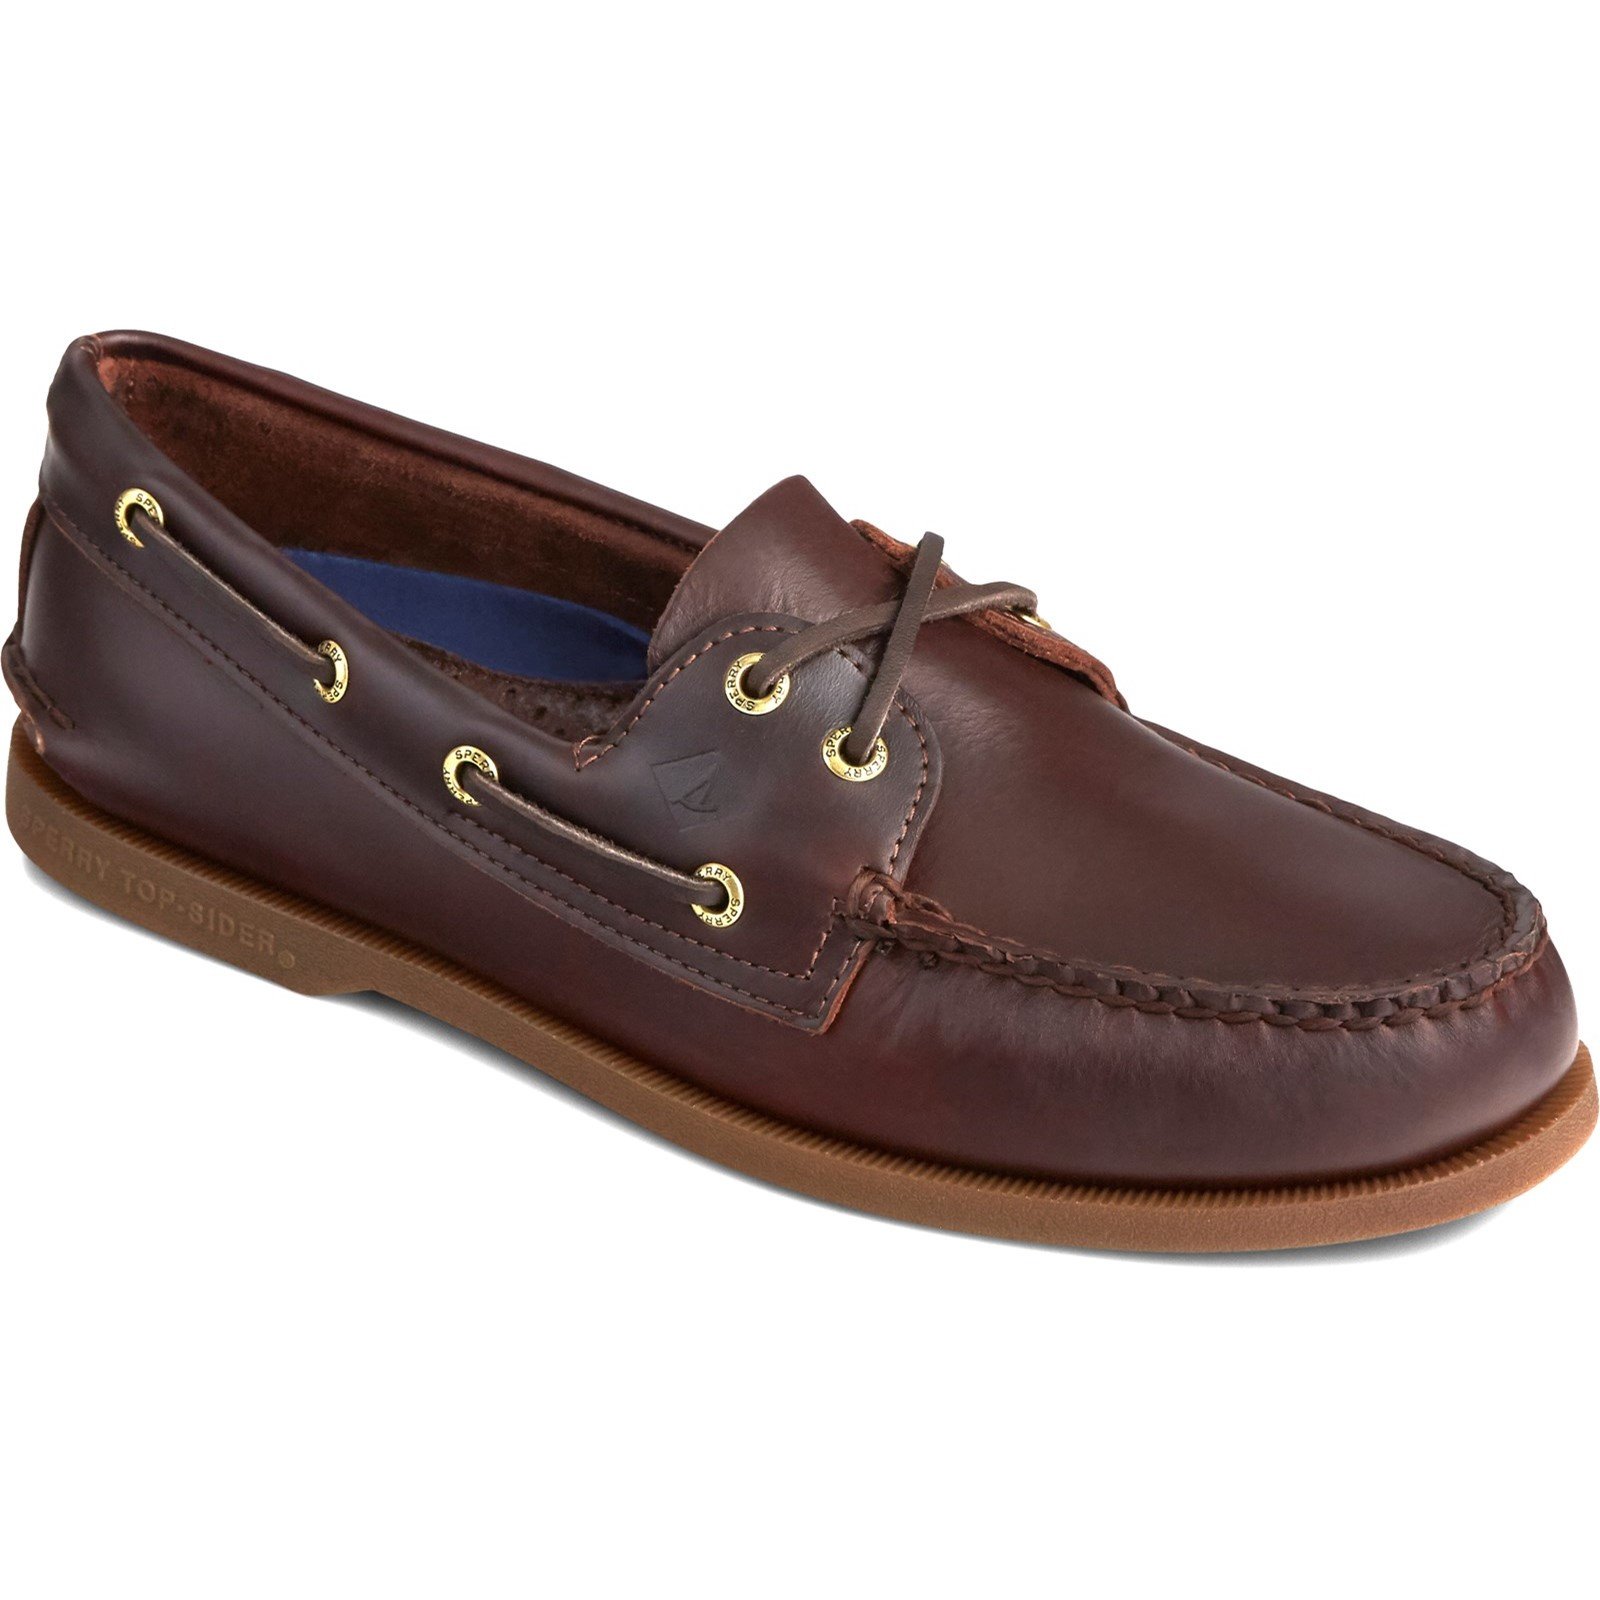 Sperry Men's Authentic Original Leather Boat Shoe Various Colours 31524 - Amaretto 7